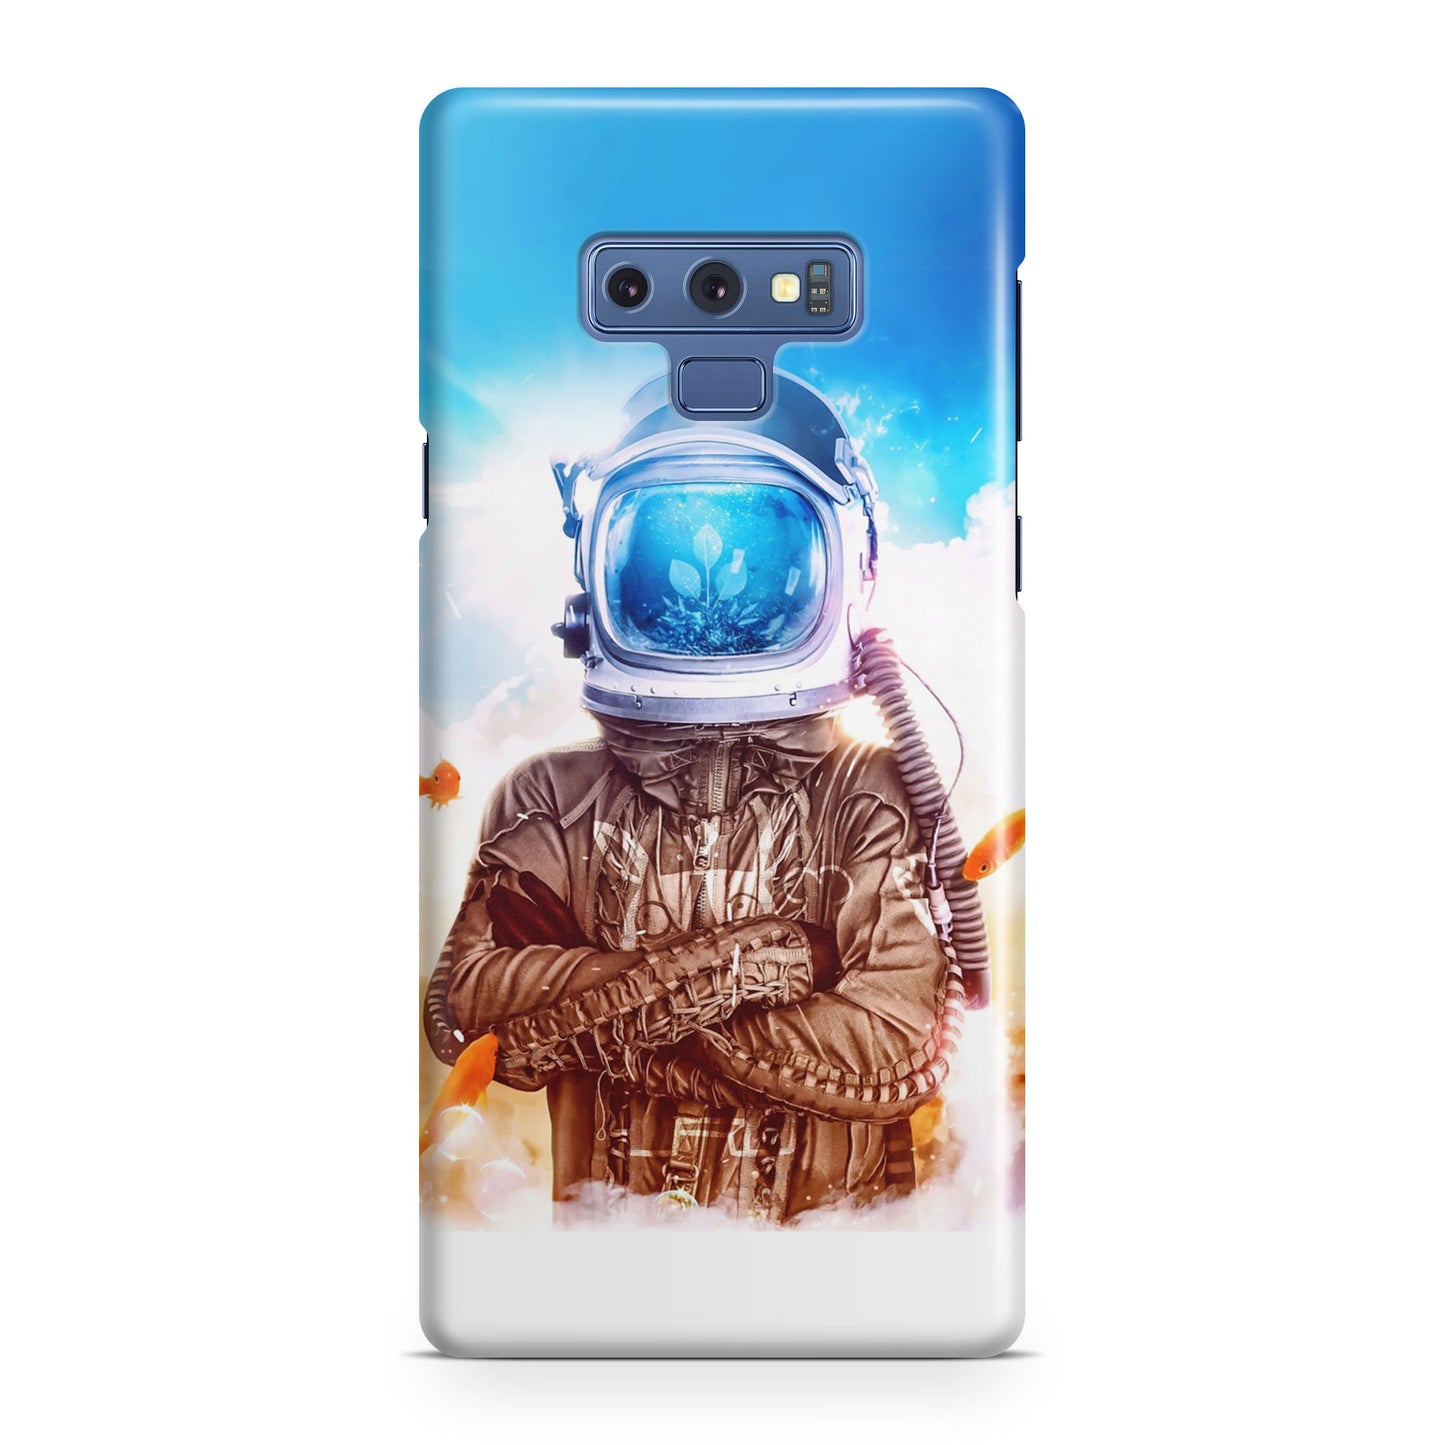 Aquatronauts Galaxy Note 9 Case